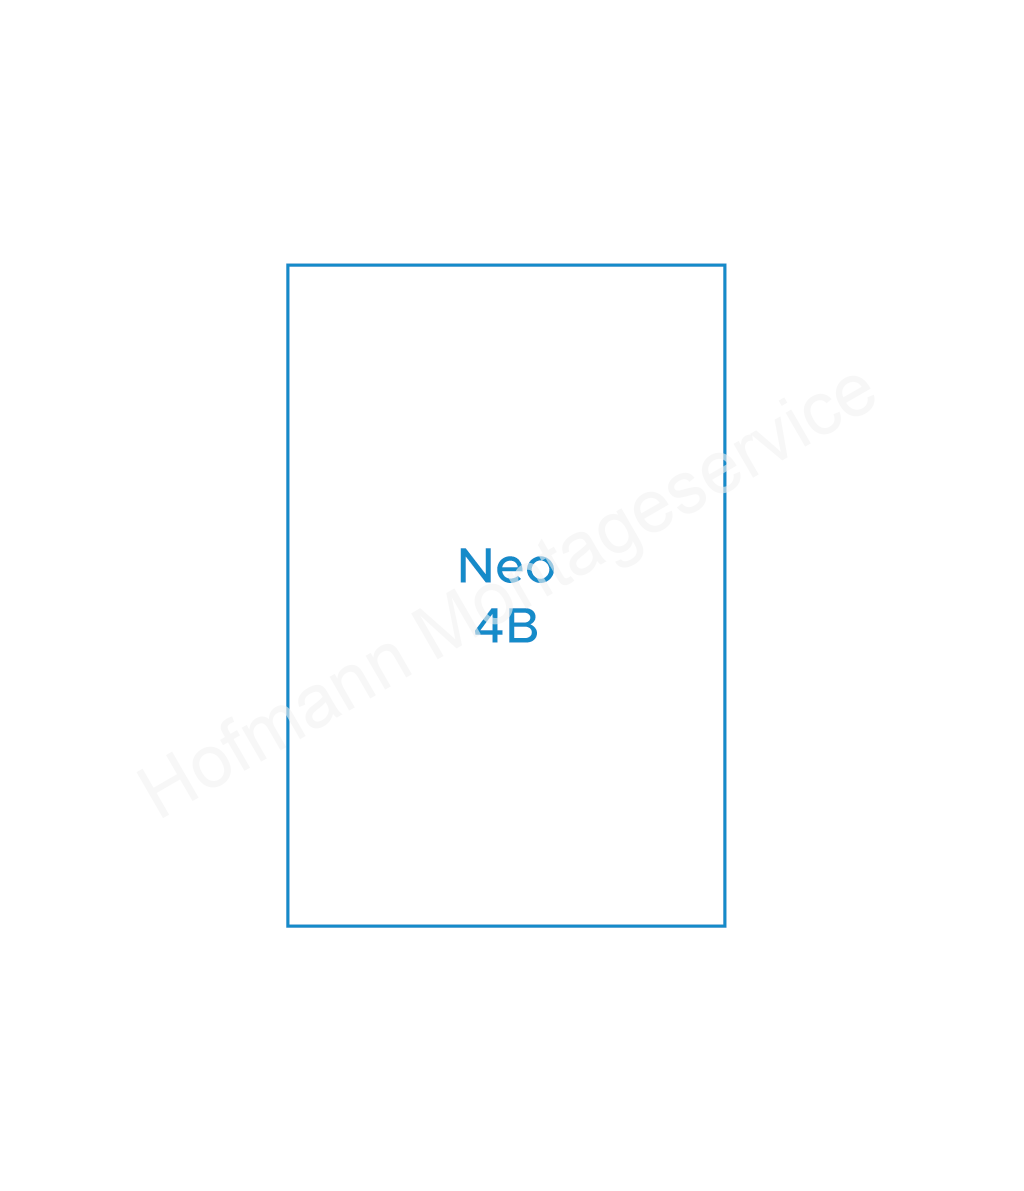 Neo 4B